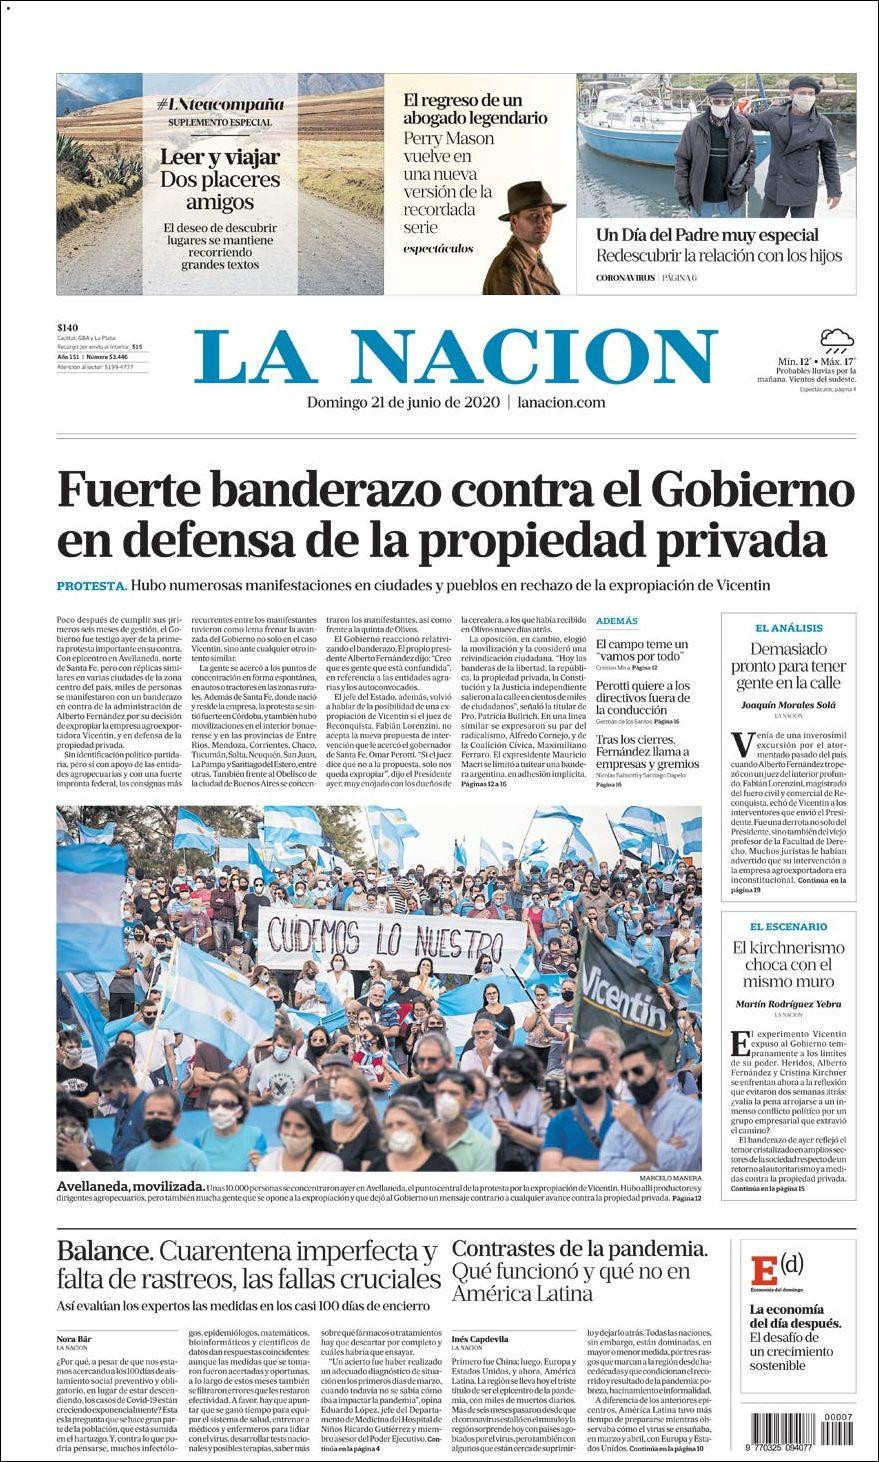 Tapas de diarios, La Nacion, domingo 21 de junio de 2020